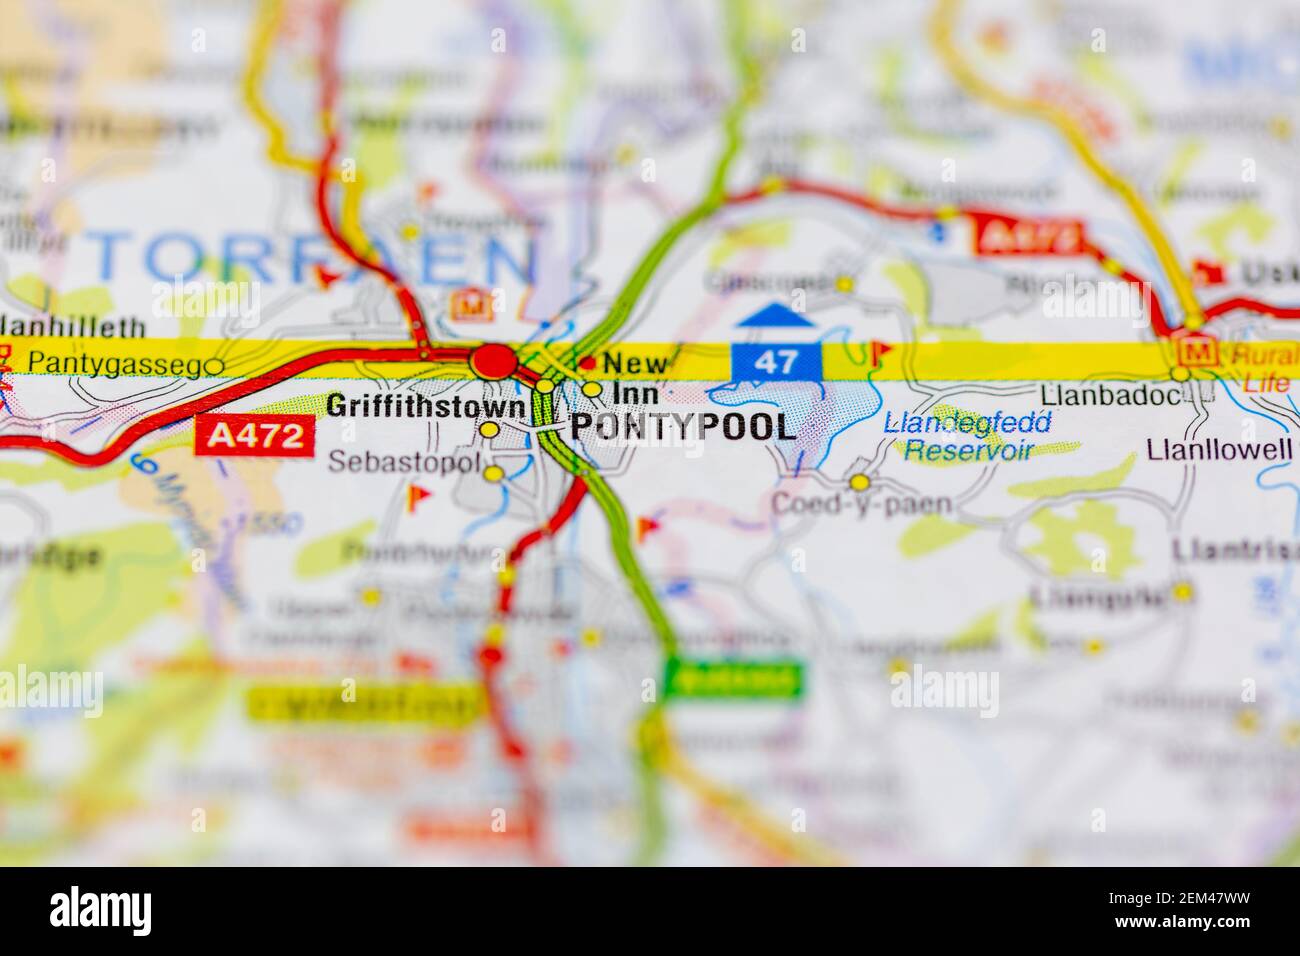 Pontypool illustré sur une carte routière ou une carte géographique Banque D'Images